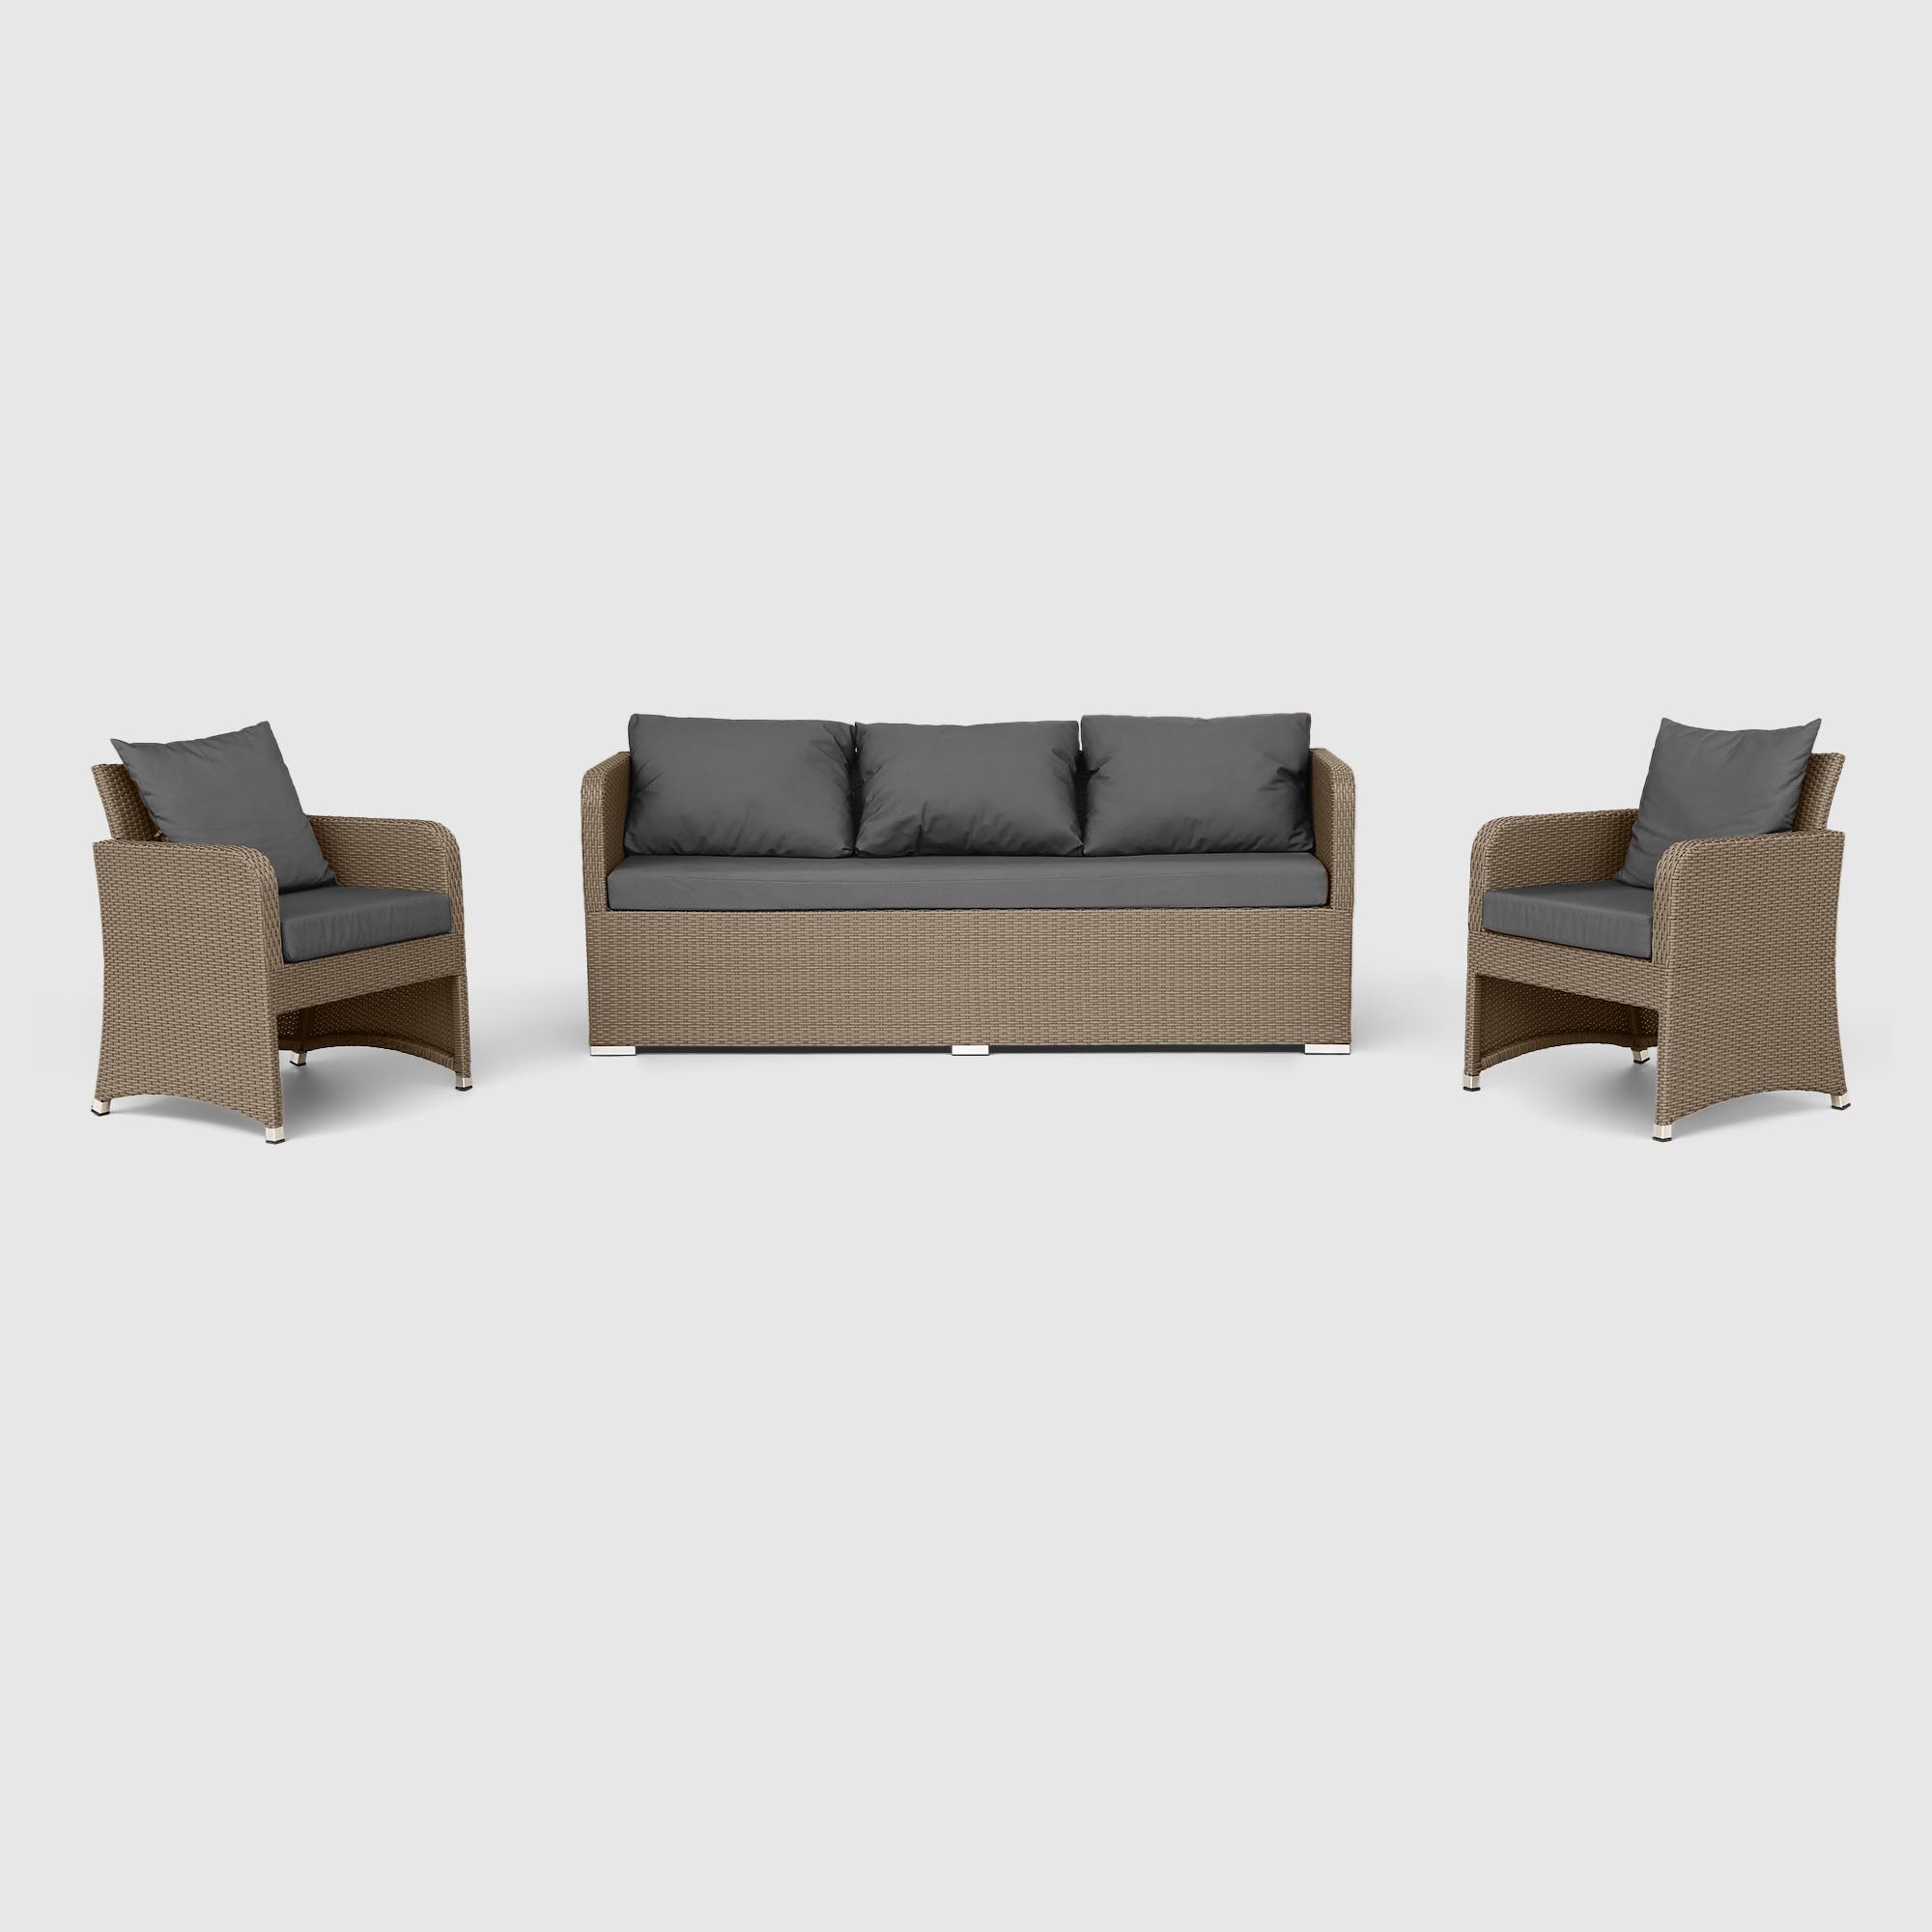 Комплект мебели NS Rattan LWS 21 коричневый с серым 3 предмета комплект мебели ns rattan casual 7 предметов